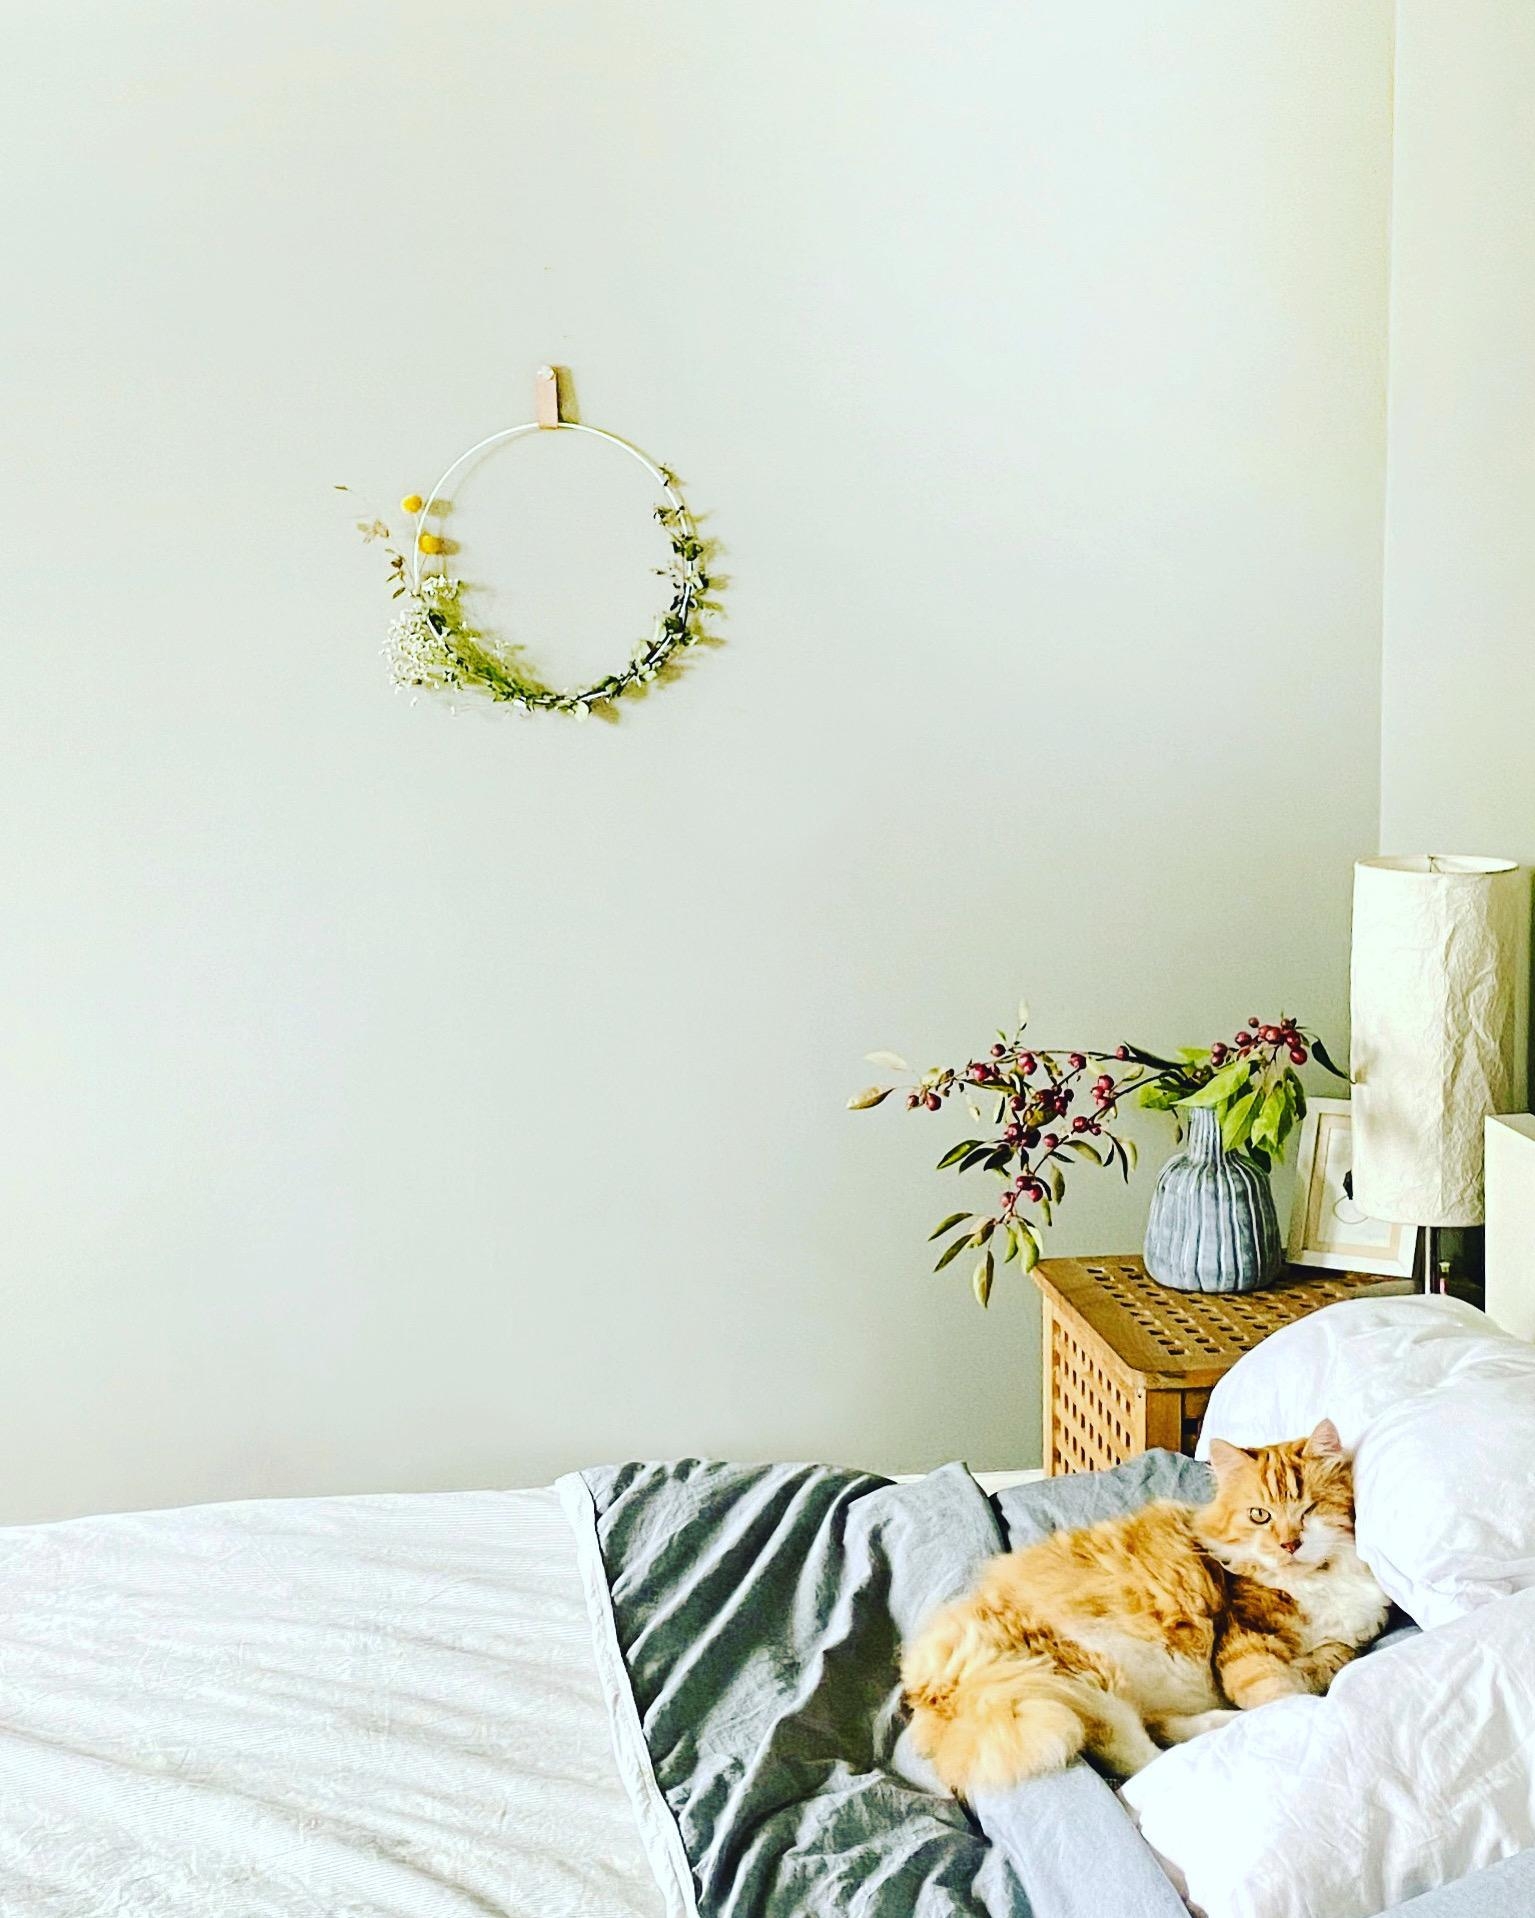 Katze müsste man sein ...

#schlafzimmer #bedroom #vasenliebe #schlafzimmerideen #katzenliebe #kranz #zierapfel